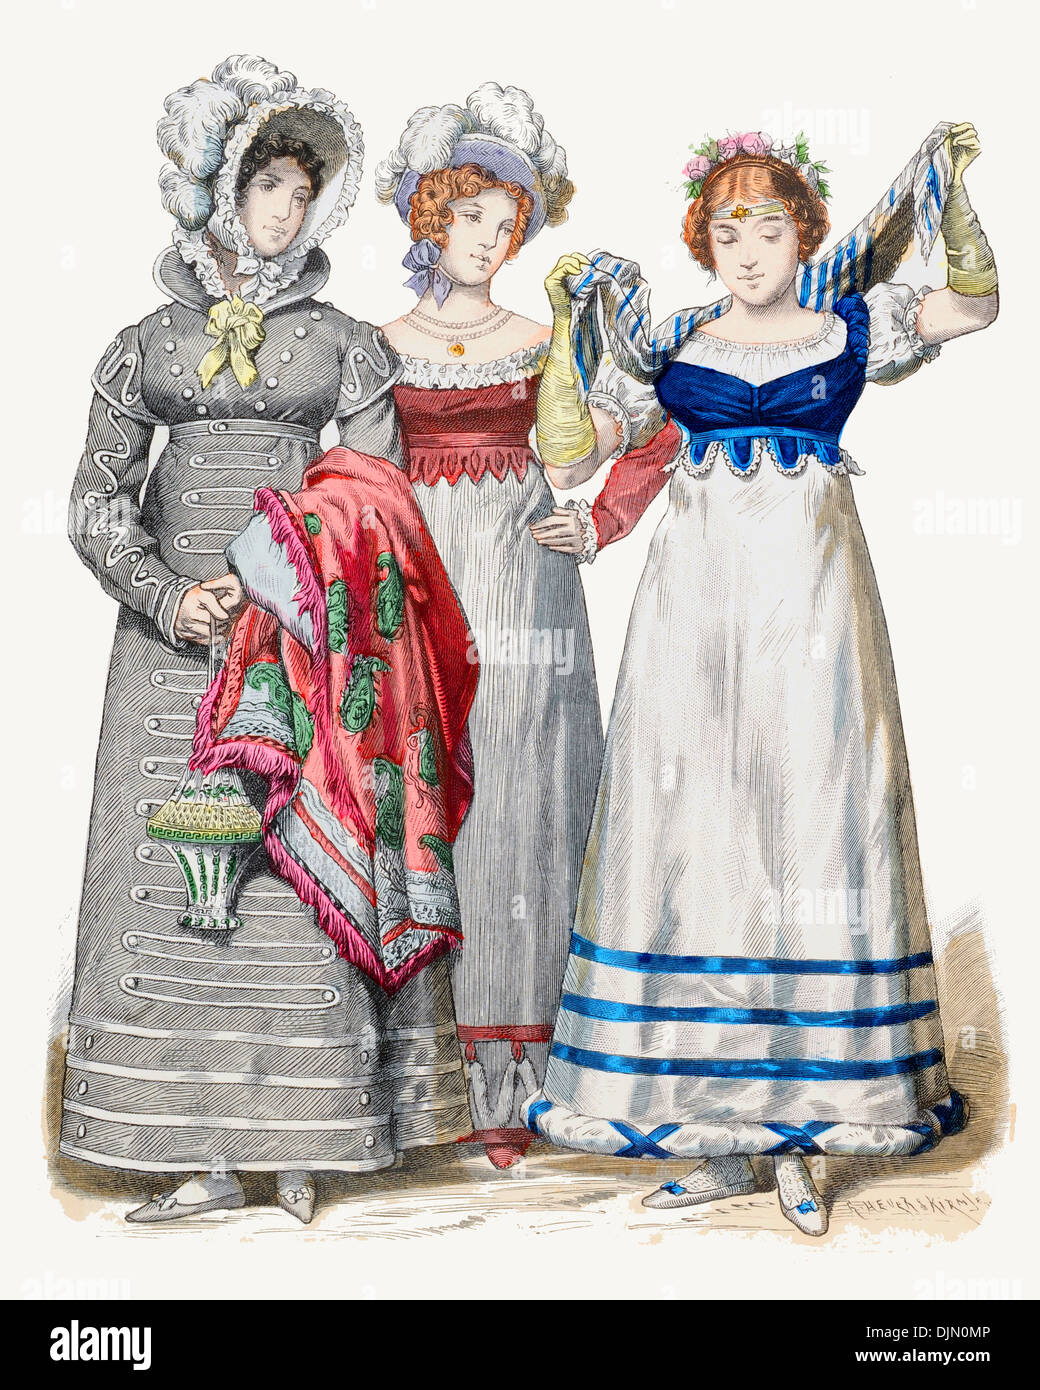 Early 19th century XIX 1800s German ladies costume Stock Photo